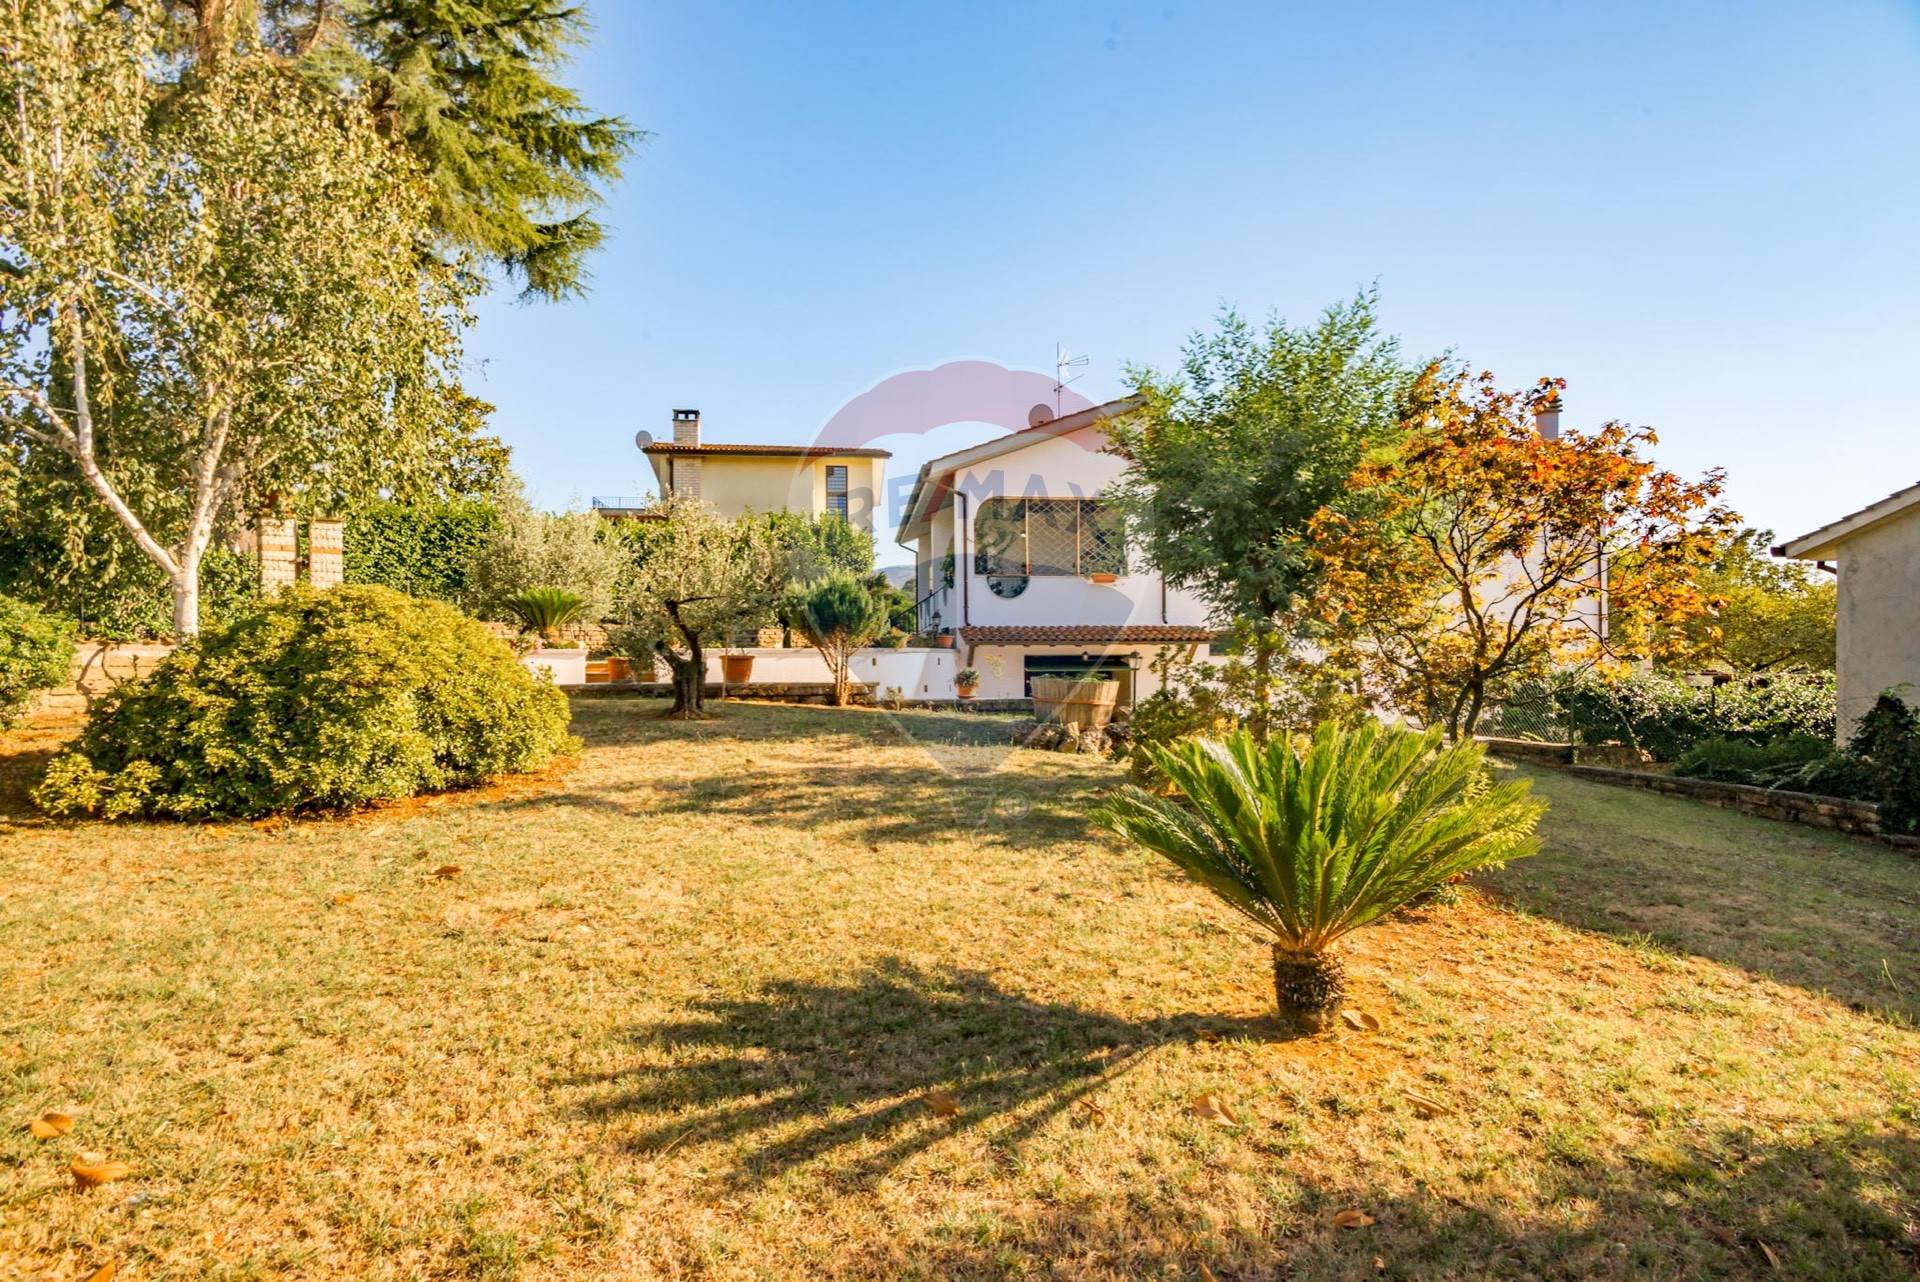 Villa in vendita a Artena, 7 locali, zona Zona: Colubro, prezzo € 299.000 | CambioCasa.it